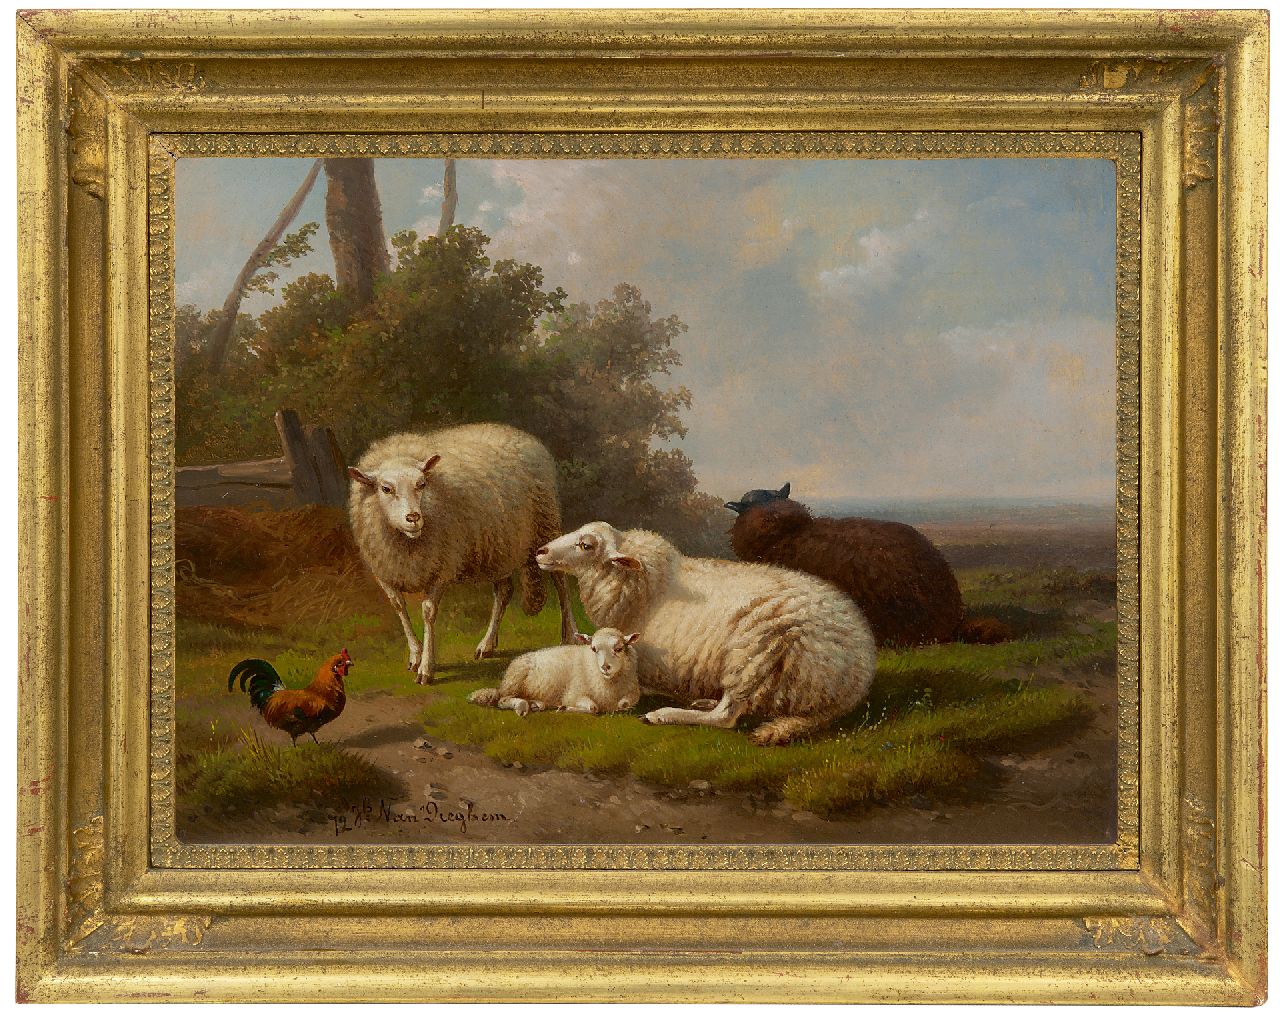 Dieghem J. van | Joseph van Dieghem, An idyllic landscape with sheep, oil on panel 22.6 x 31.0 cm, signed l.l. and dated '72